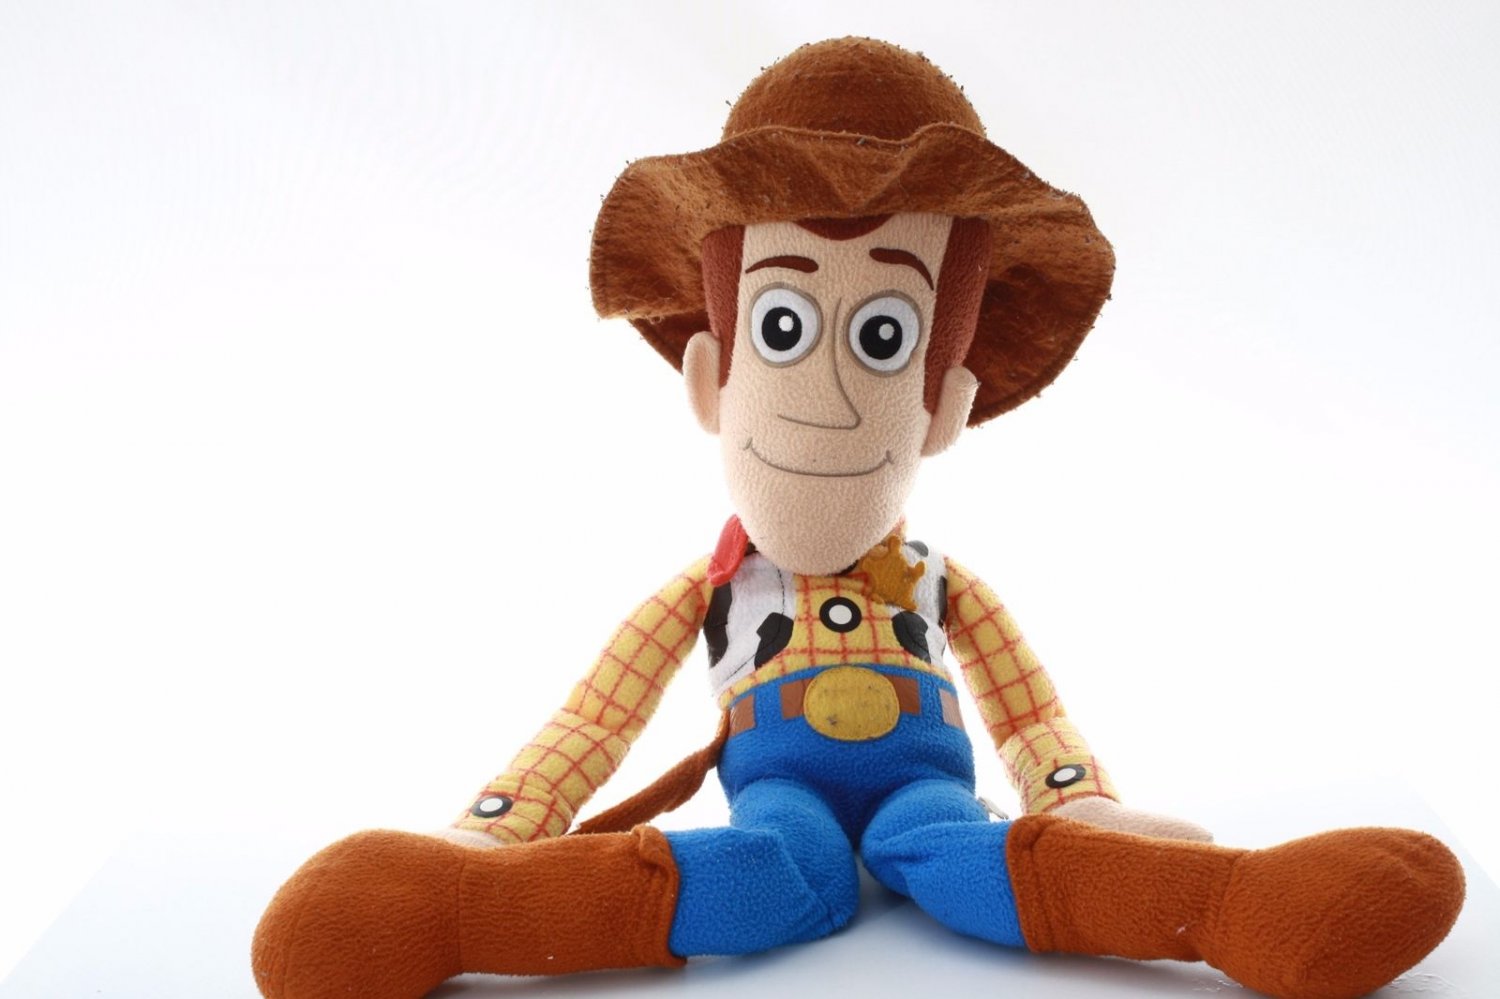 Walt Disney Pixar Toy Story Stuffed Animal Giant Woody 